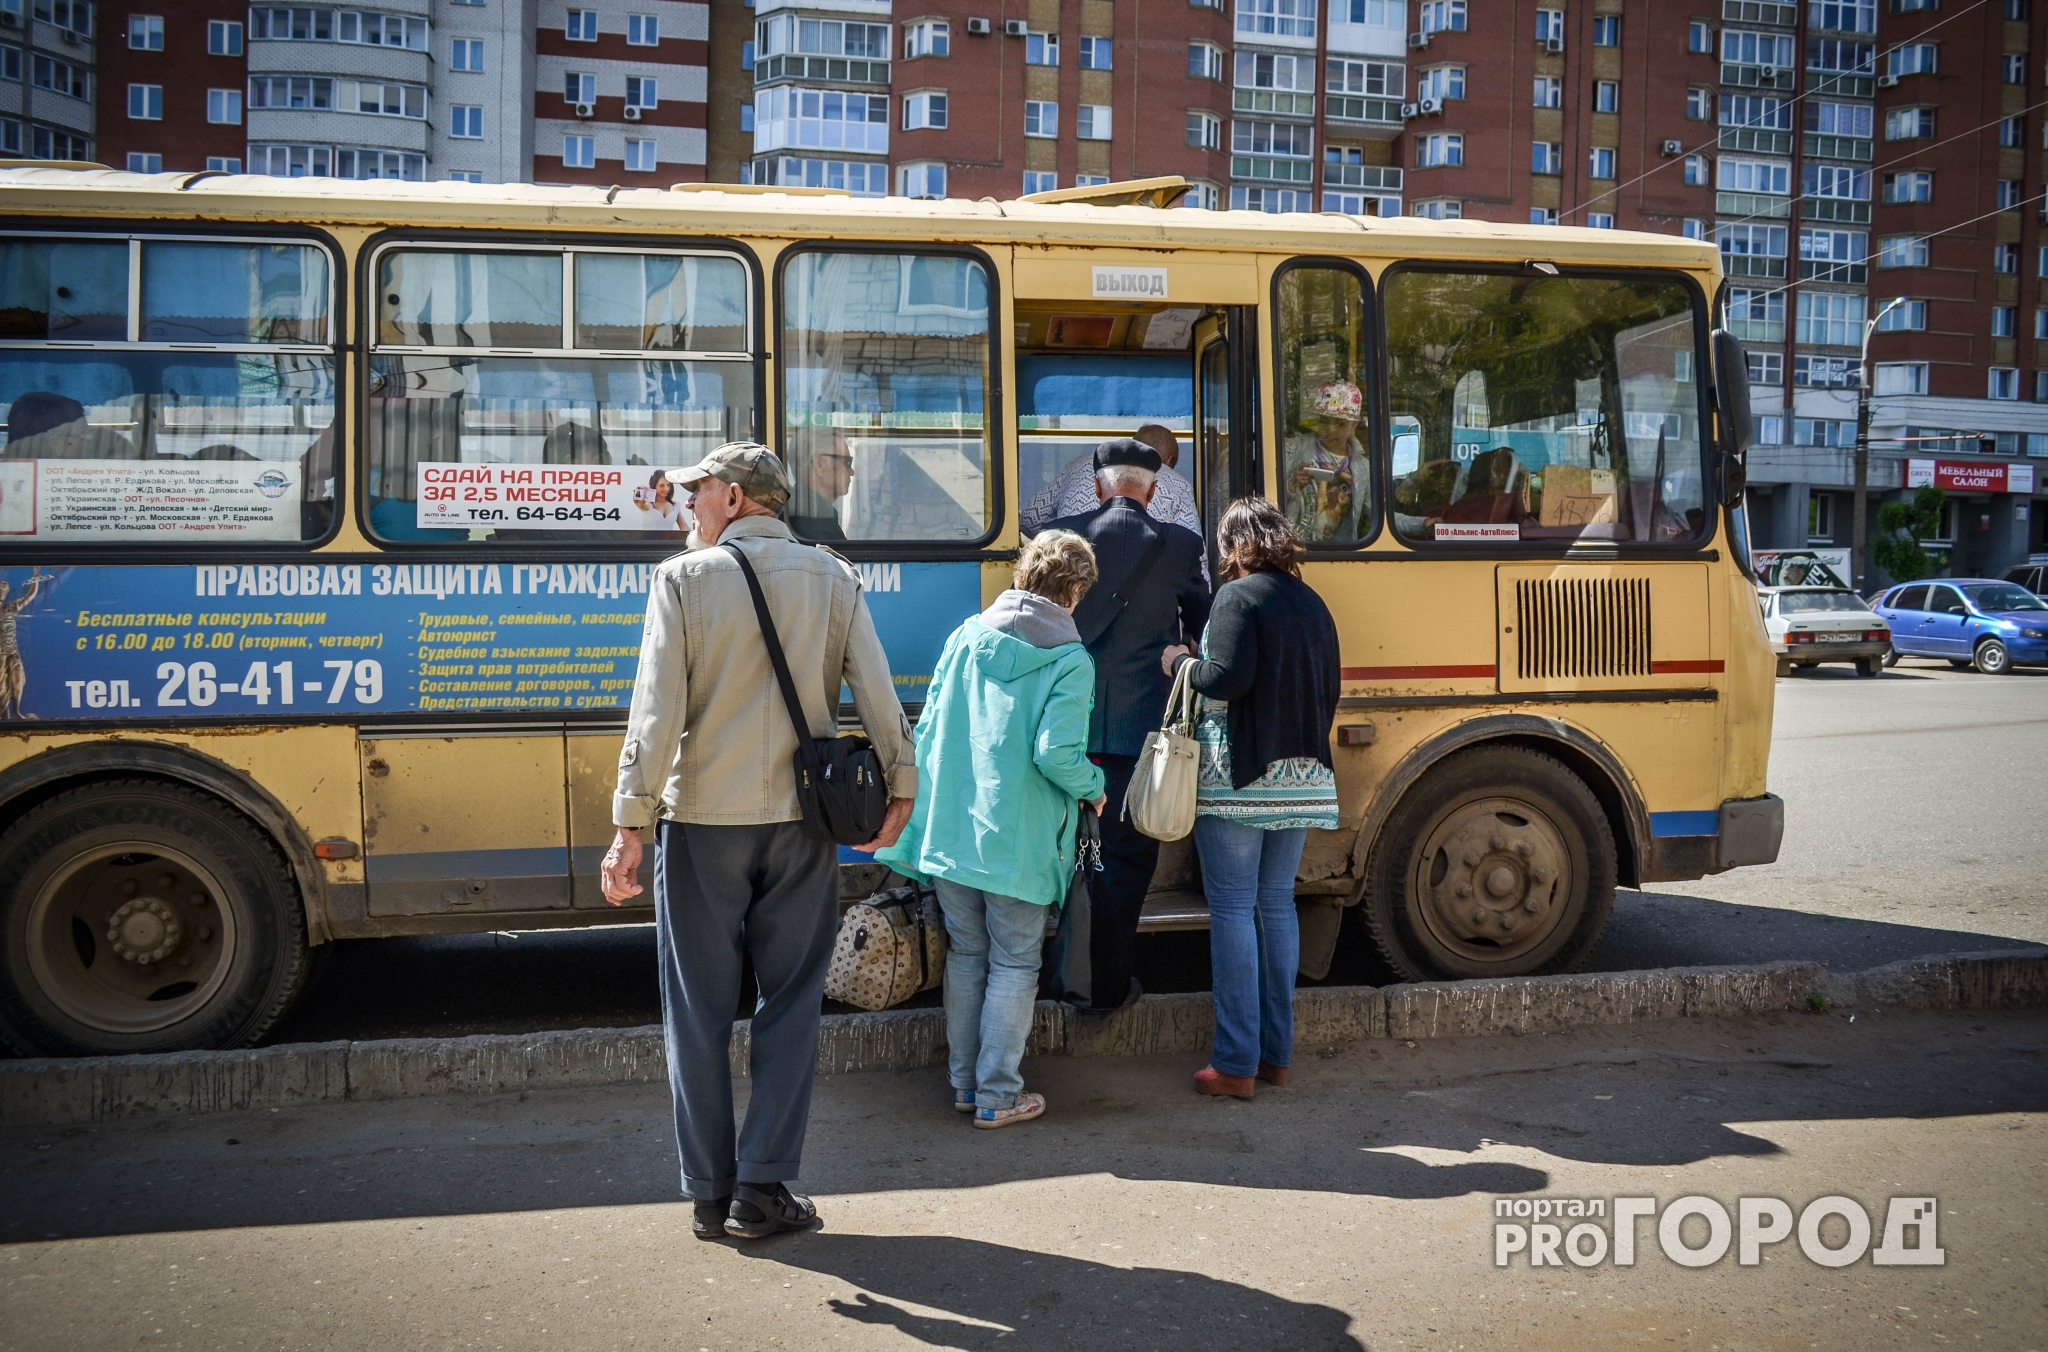 Кировчане смогут выиграть проездной с бесплатными поездками